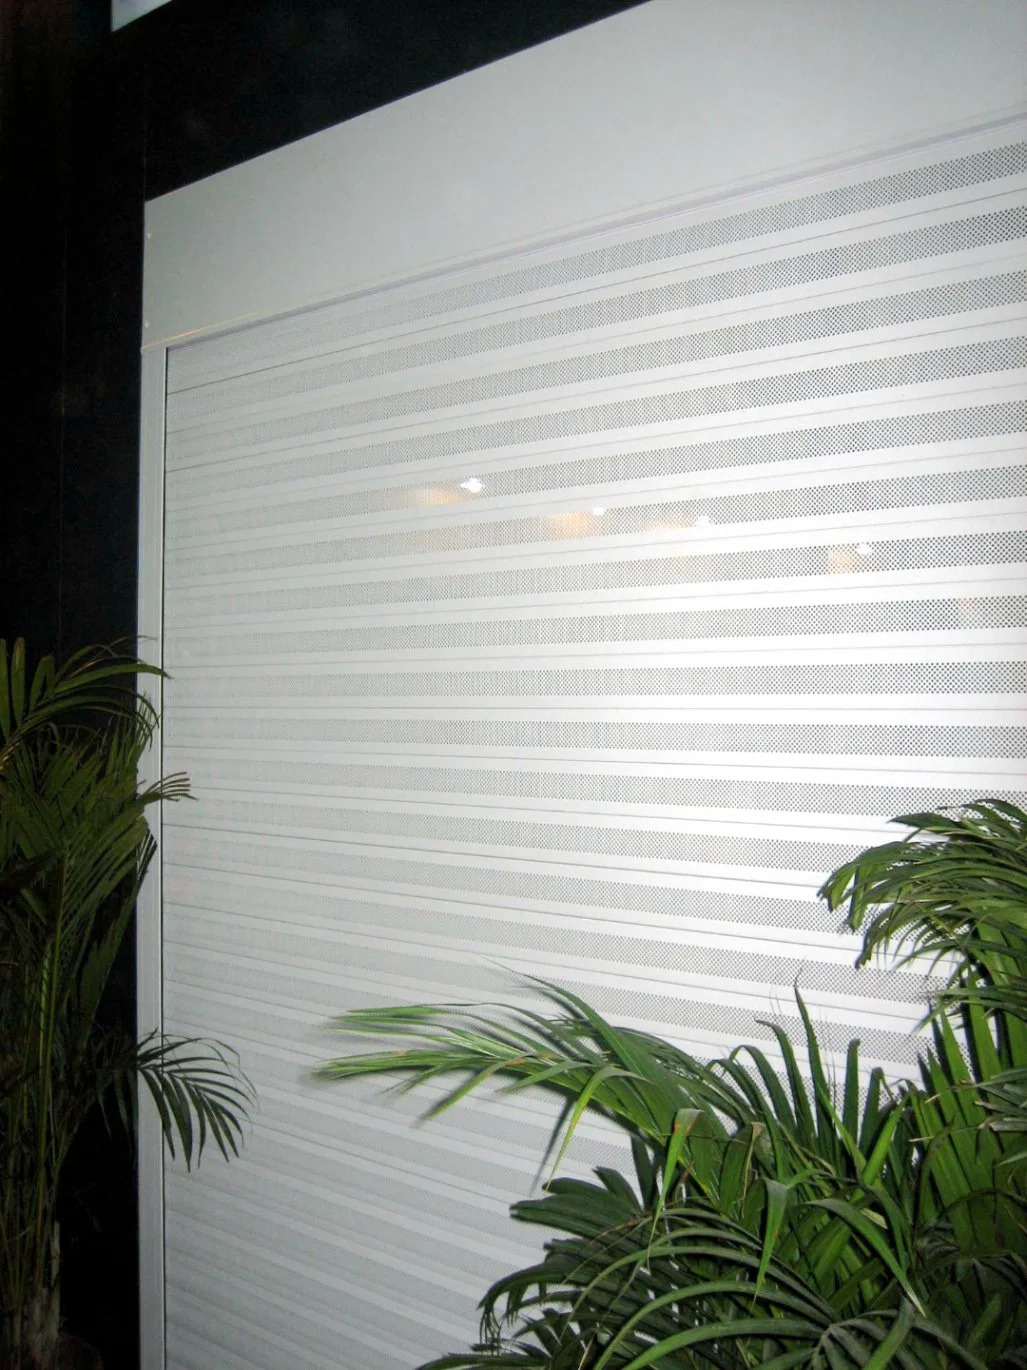 Industrial Exterior or Aluminum Electric Overhead Garage Roller Shutter Security Door